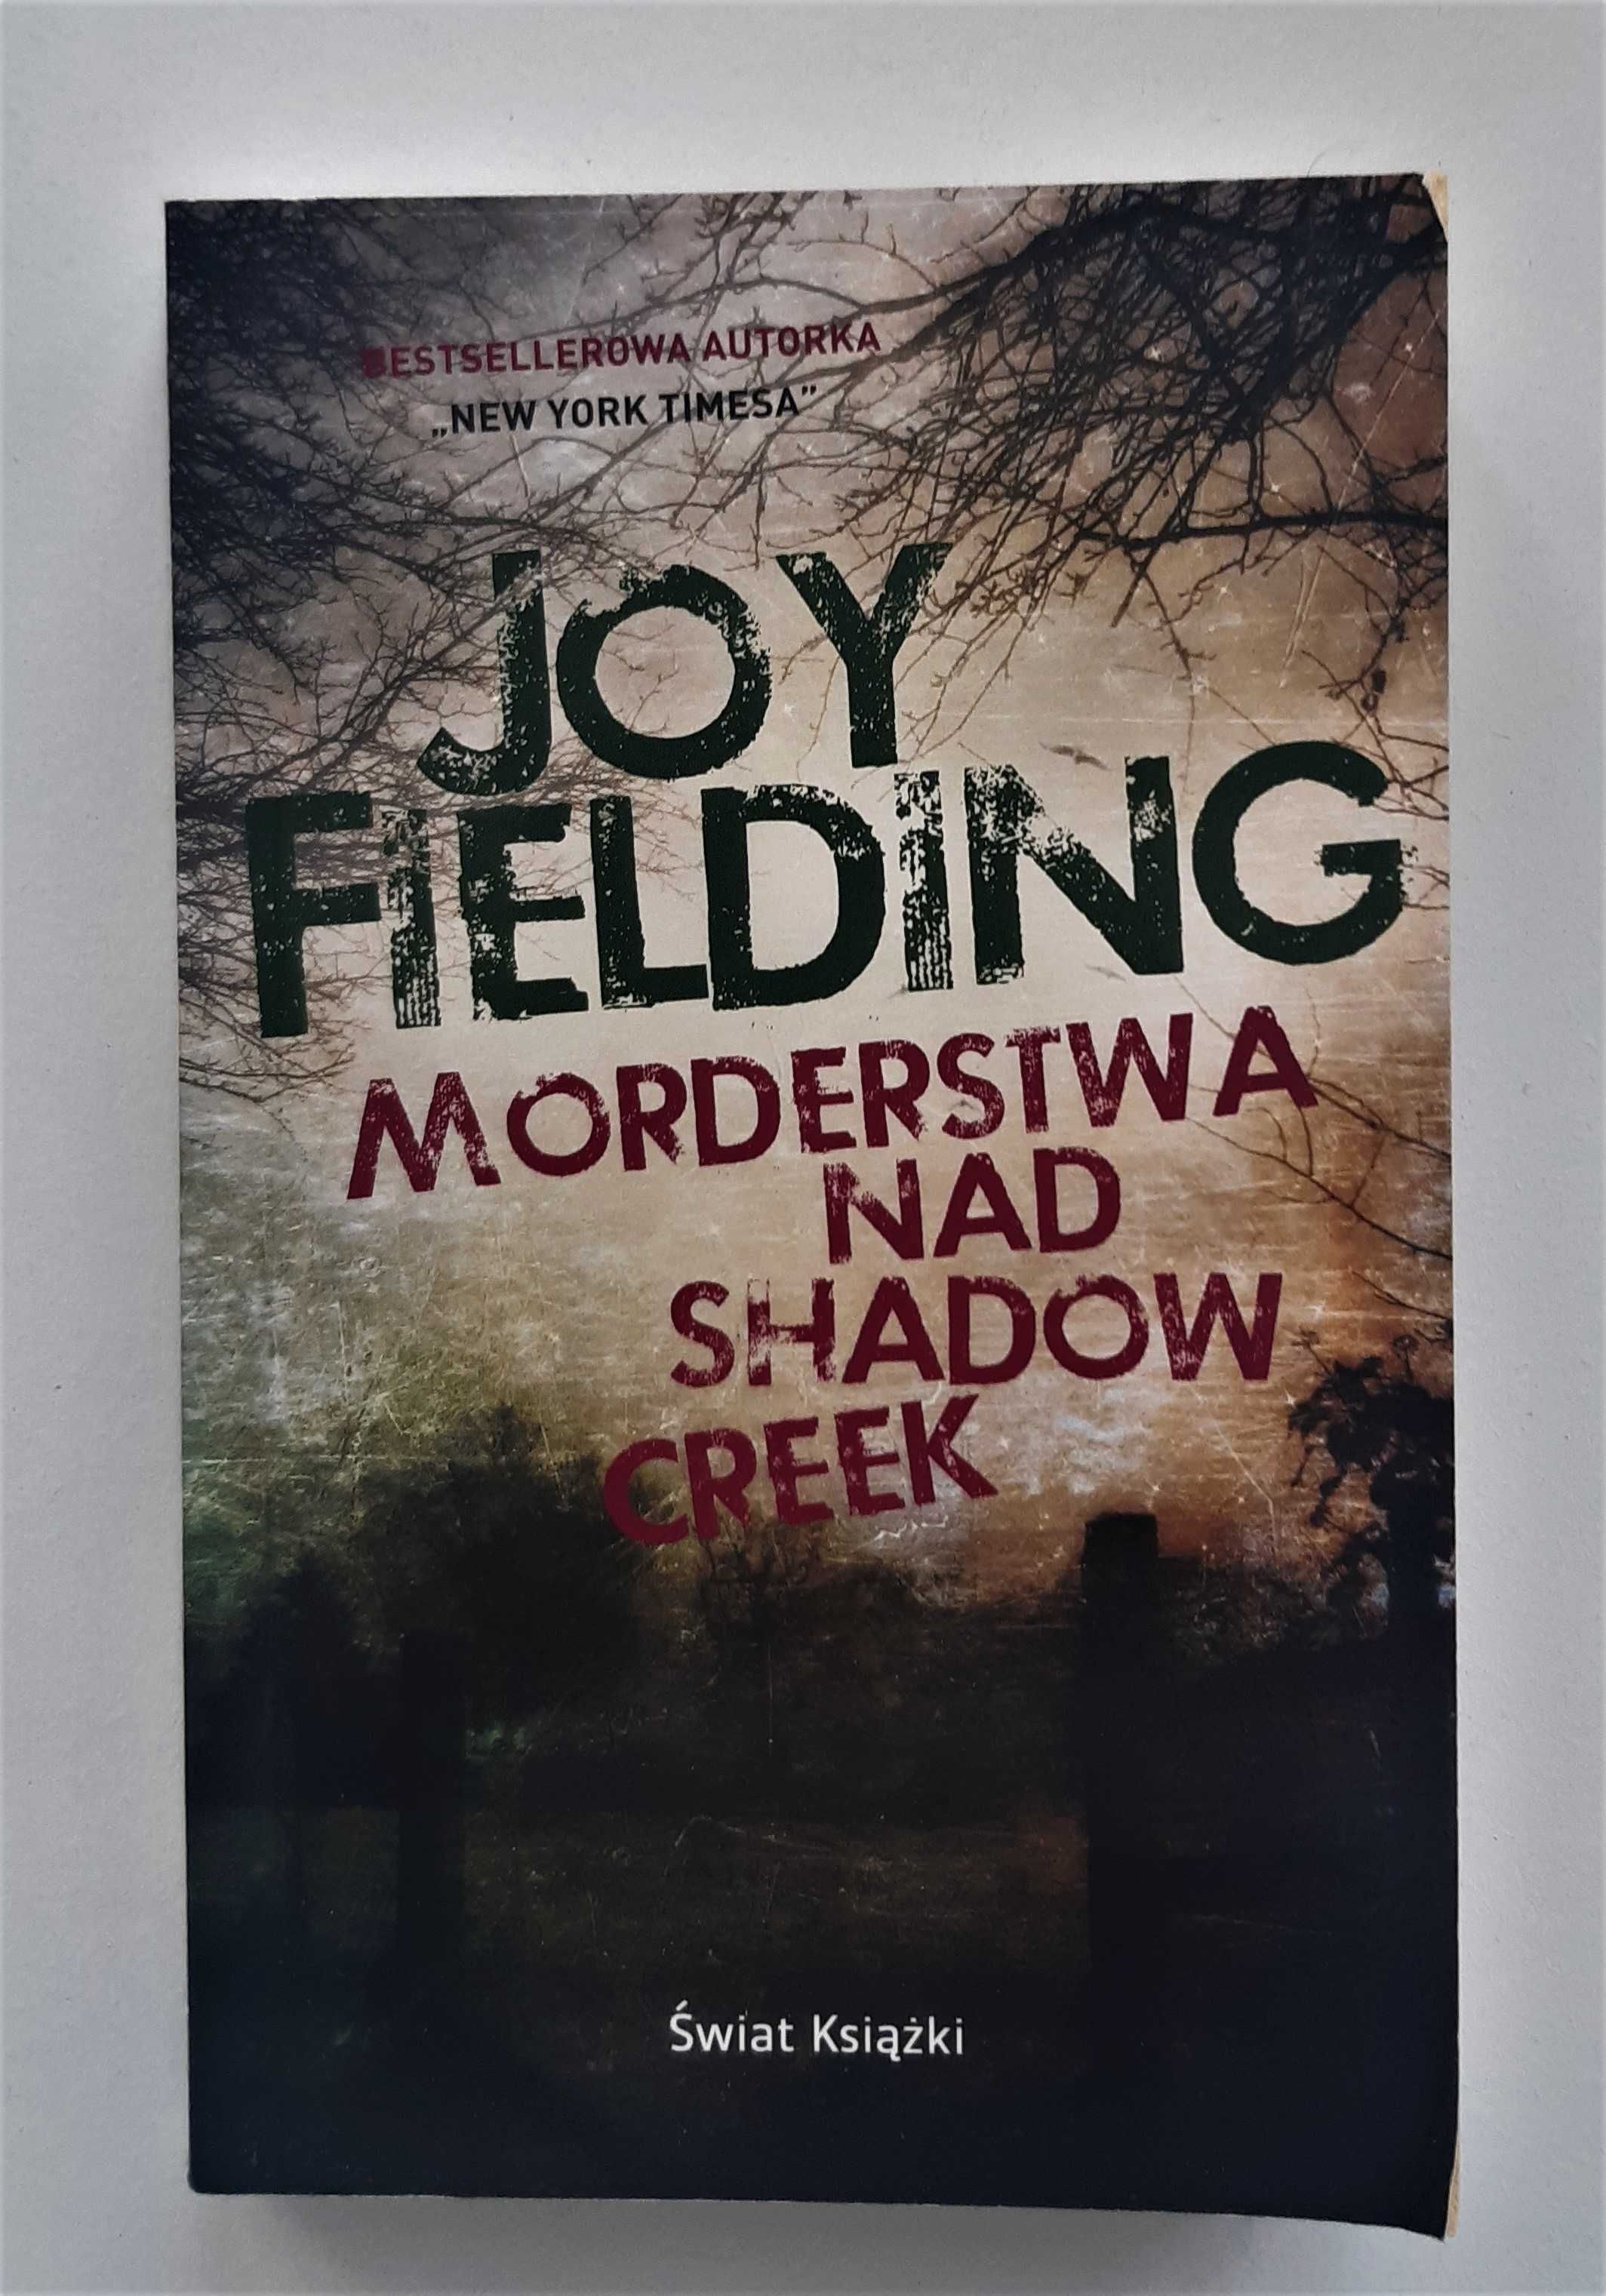 Joy Fielding - Morderstwa nad Shadow Creek